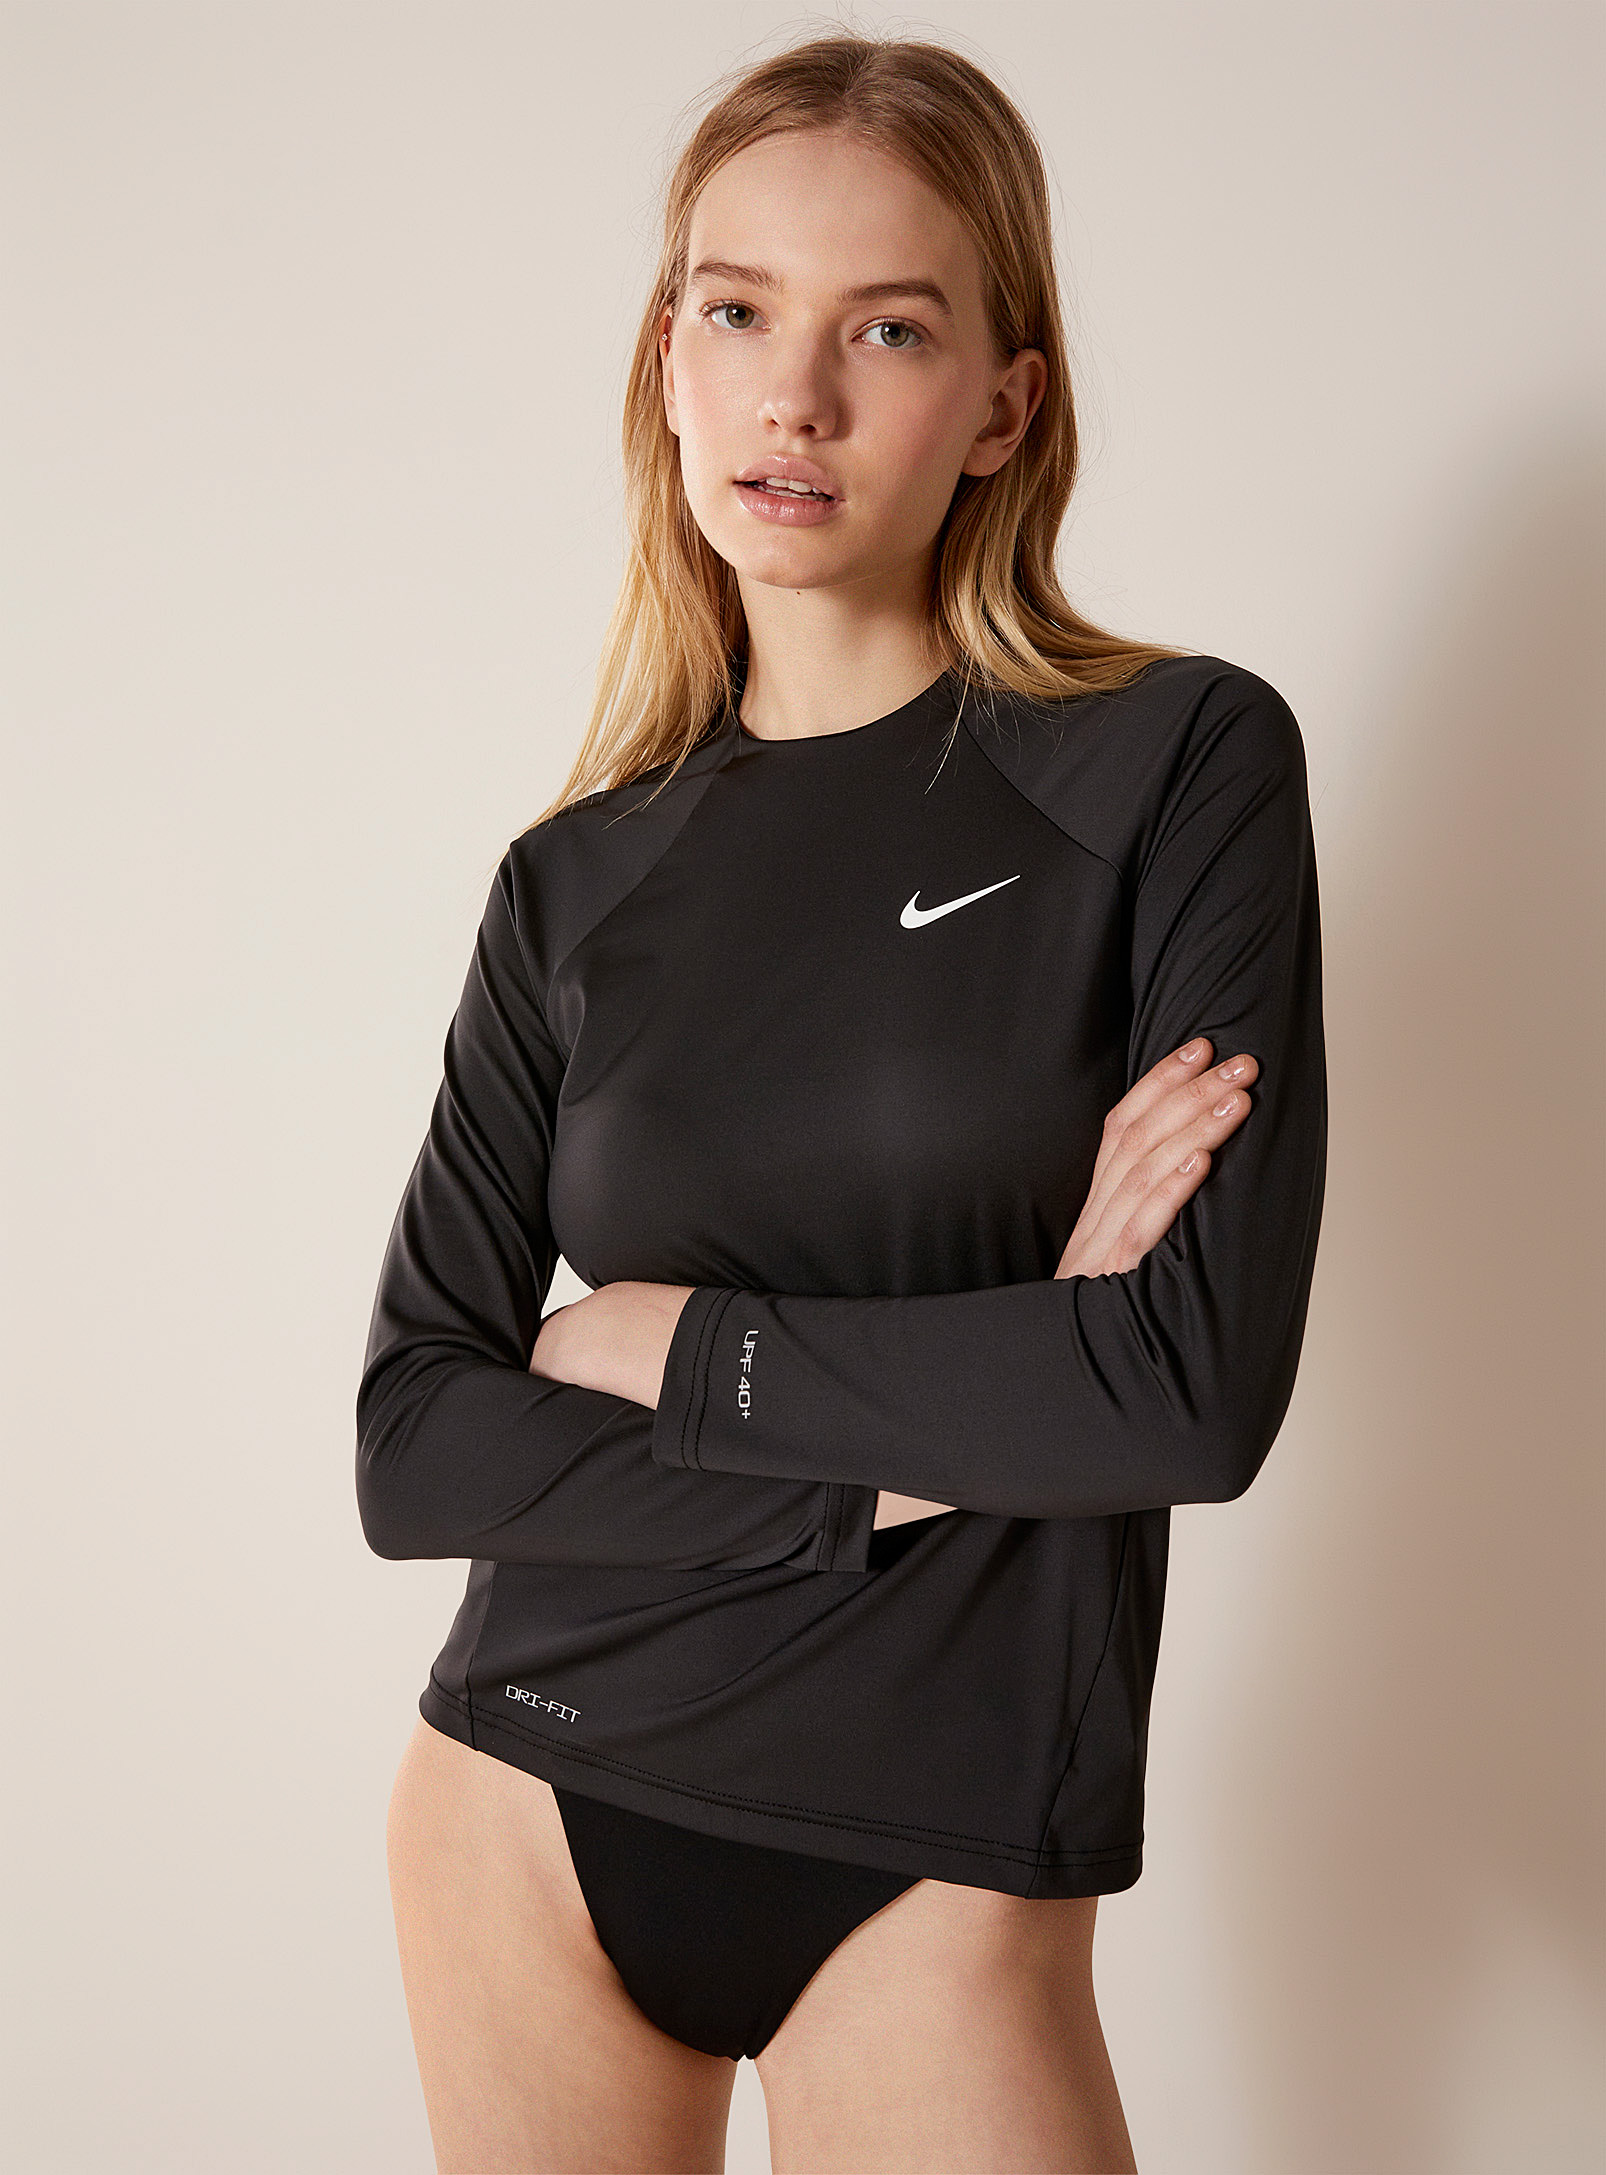 Nike - Women's Black long-sleeve rashguard T-shirt